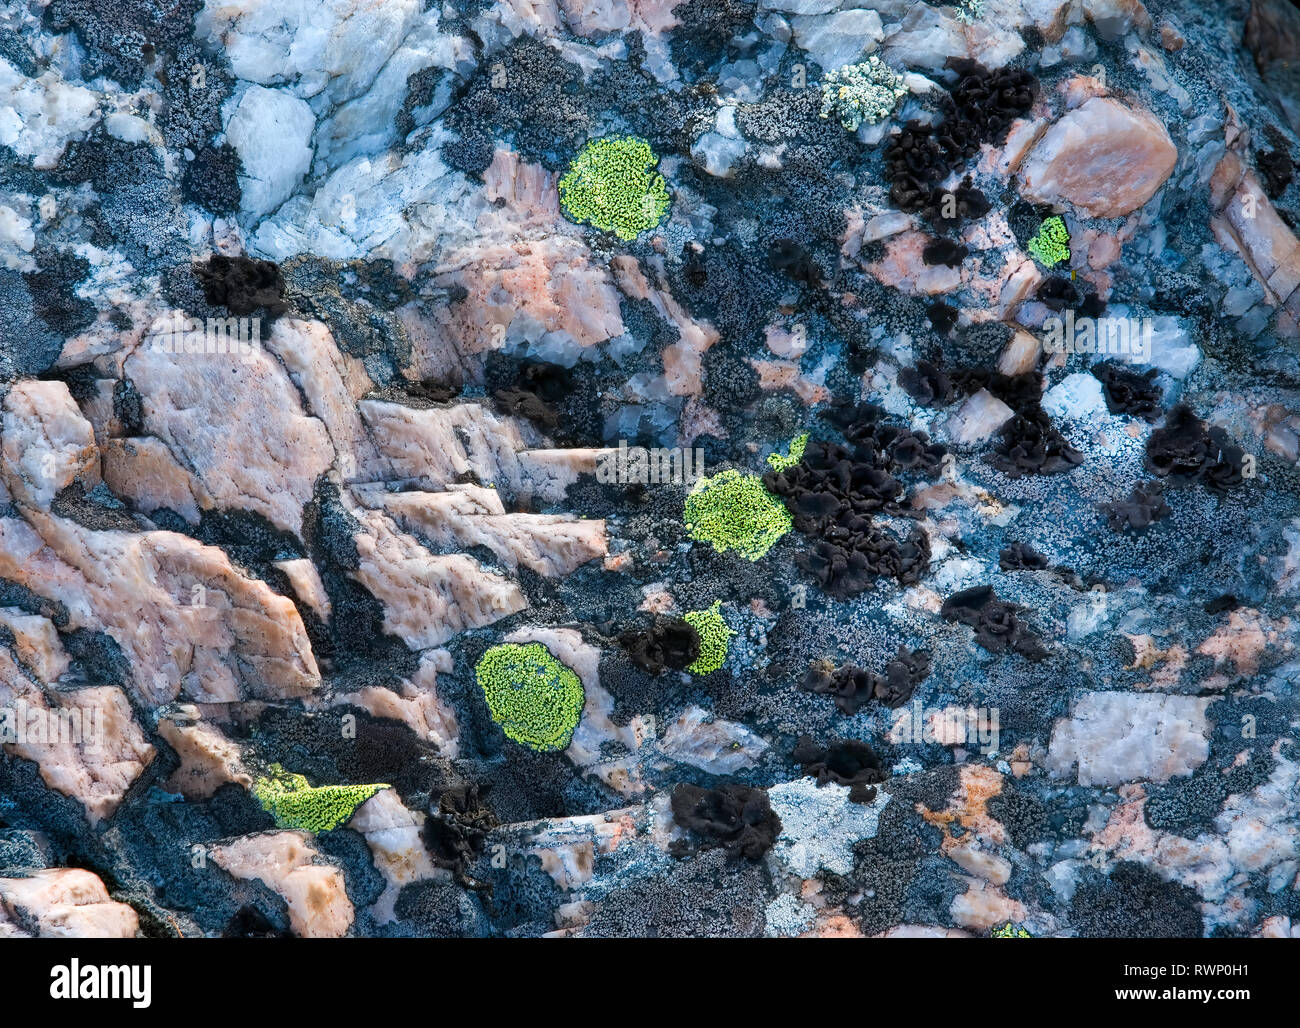 Chartreuse, gris, negro y líquenes creciendo sobre rocas precámbricas del Escudo Canadiense en la región de la Bahía de Georgia oriental de Ontario, Canadá. Rosa y Foto de stock